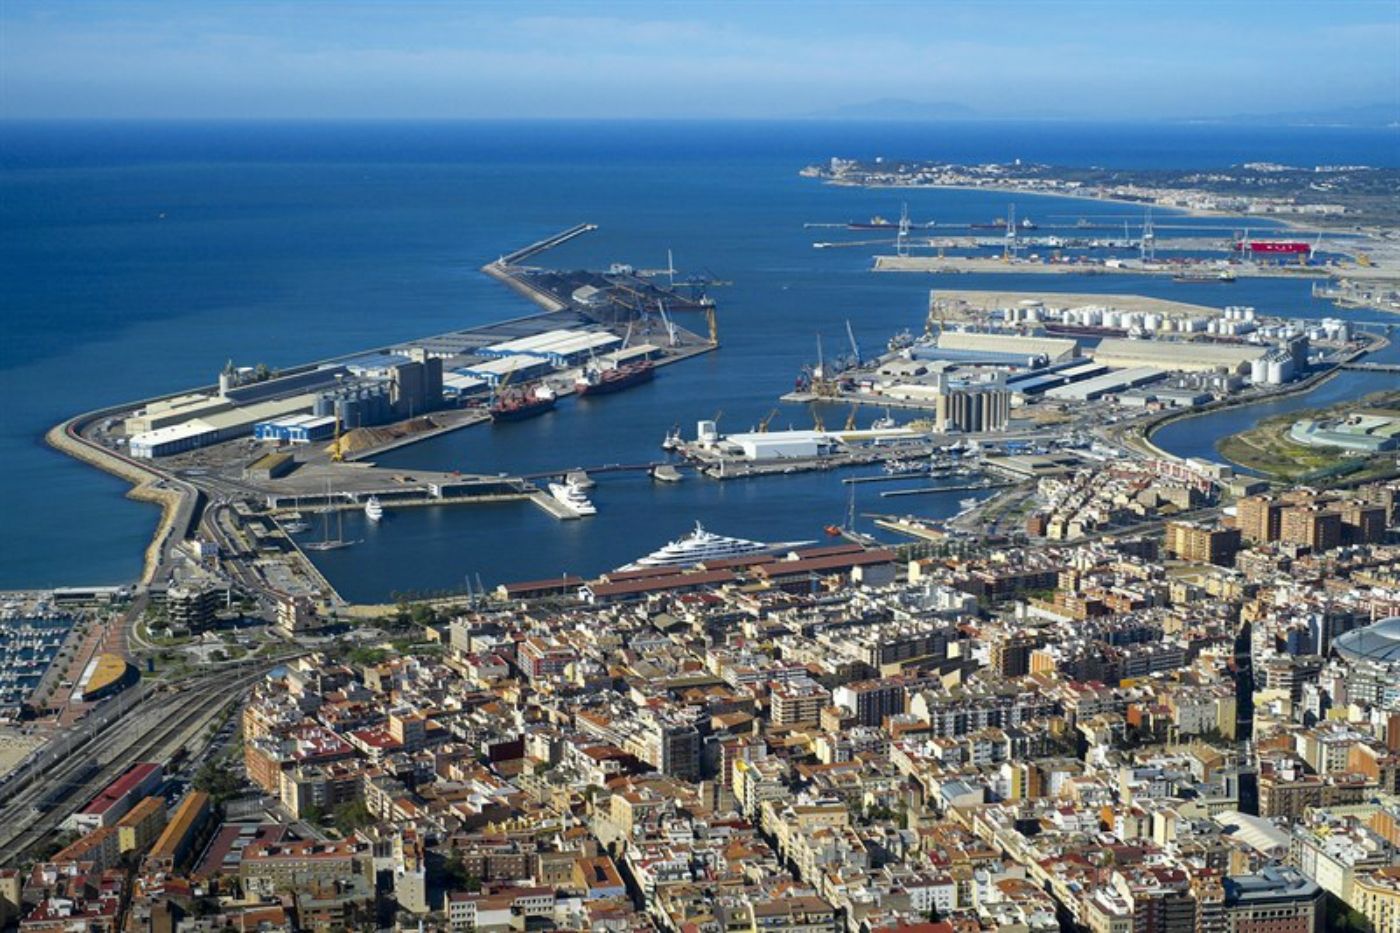 El Port de Tarragona mueve un 11% menos de toneladas pero ingresa más